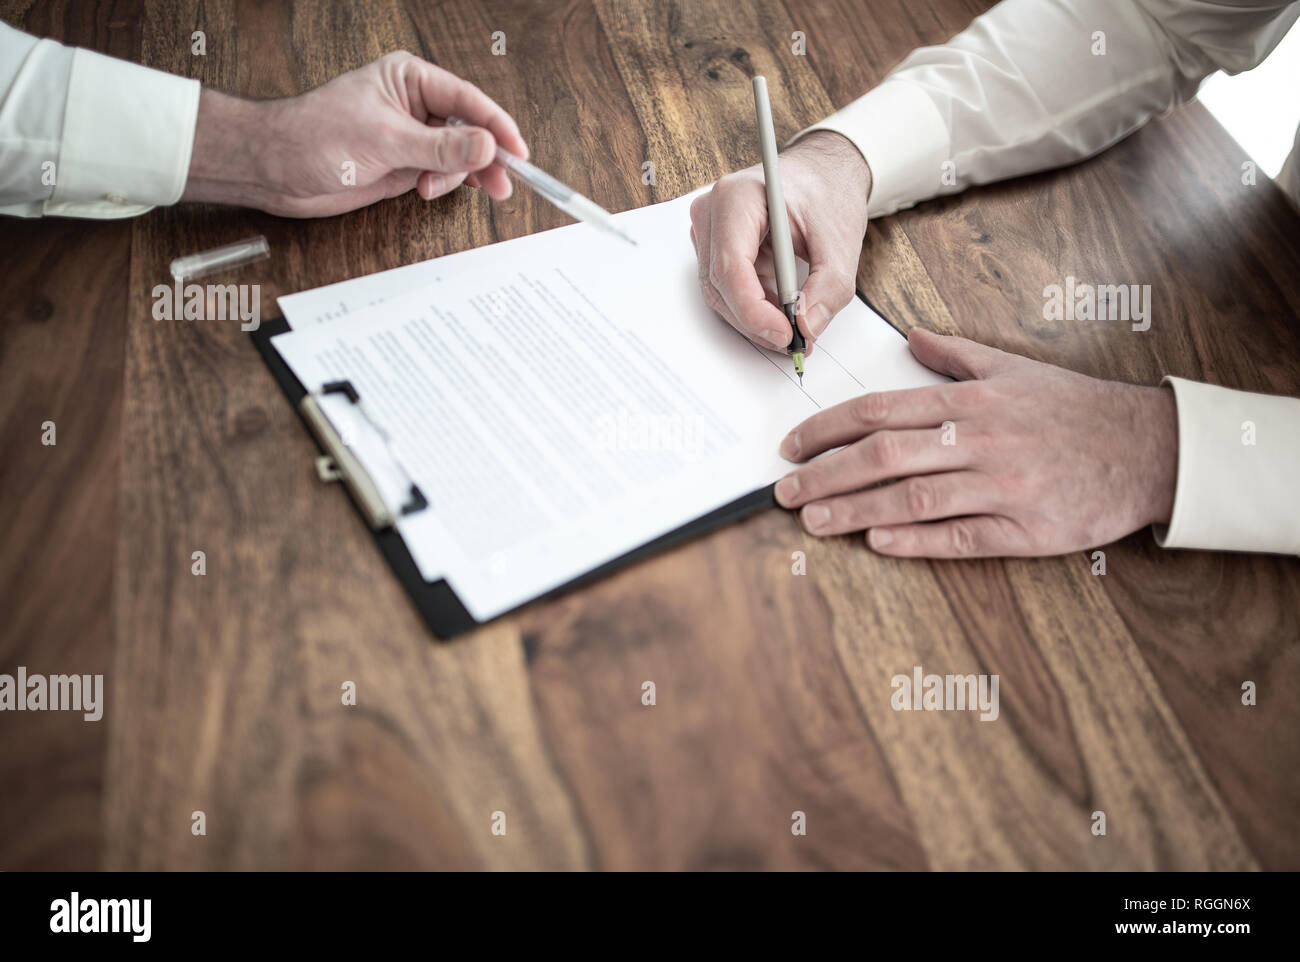 Man unterzeichnen Vertrag an den hölzernen Schreibtisch mit anderen Person zeigen auf Dokument Stockfoto